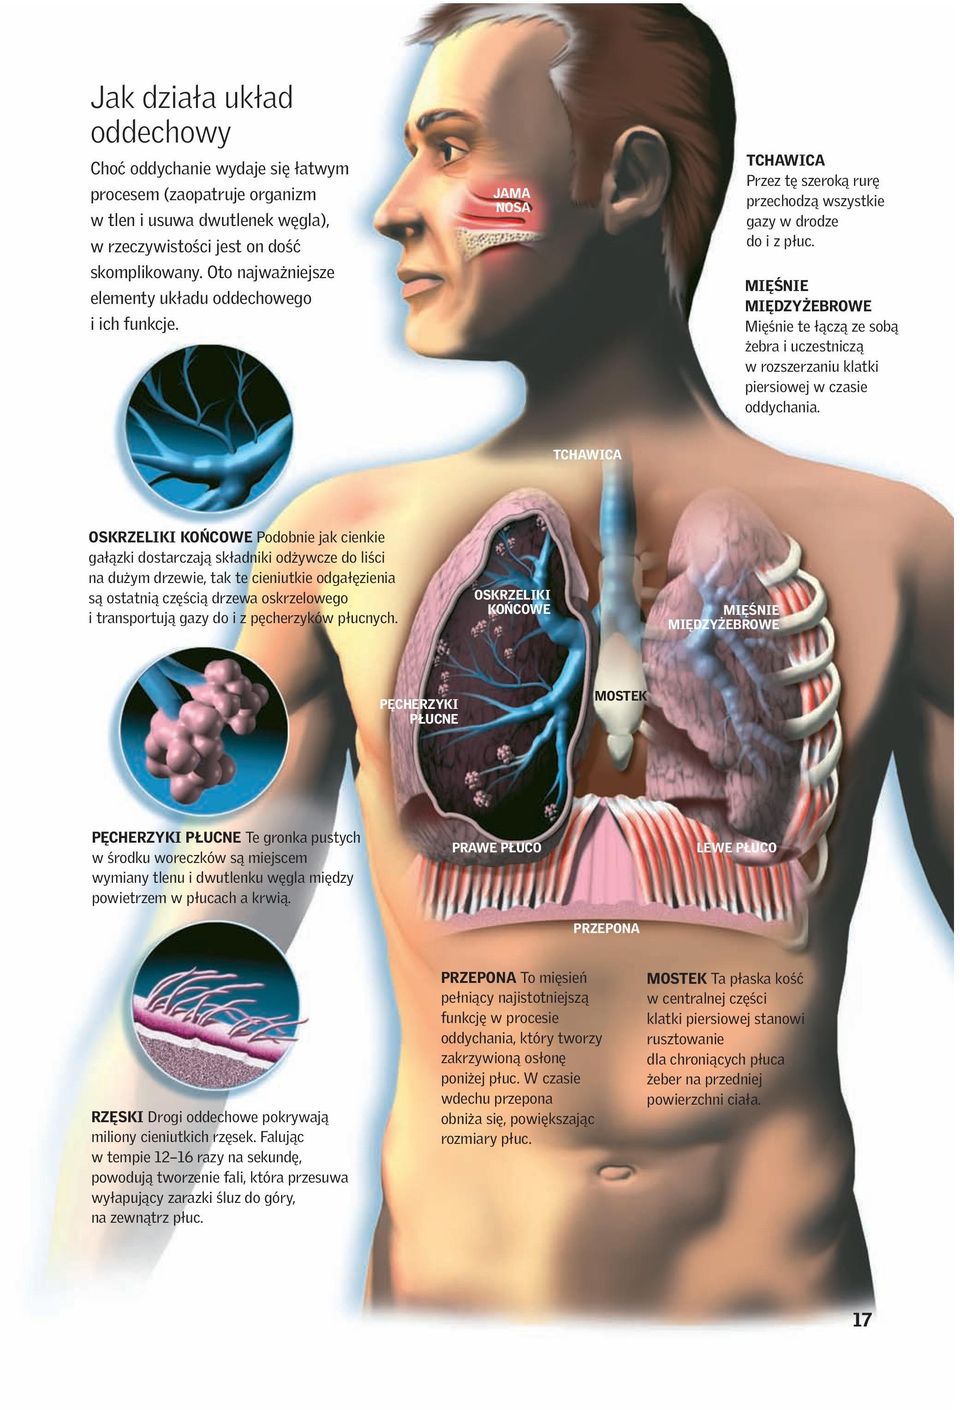 MIĘŚNIE MIĘDZYŻEBROWE Mięśnie te łączą ze sobą żebra i uczestniczą w rozszerzaniu klatki piersiowej w czasie oddychania.